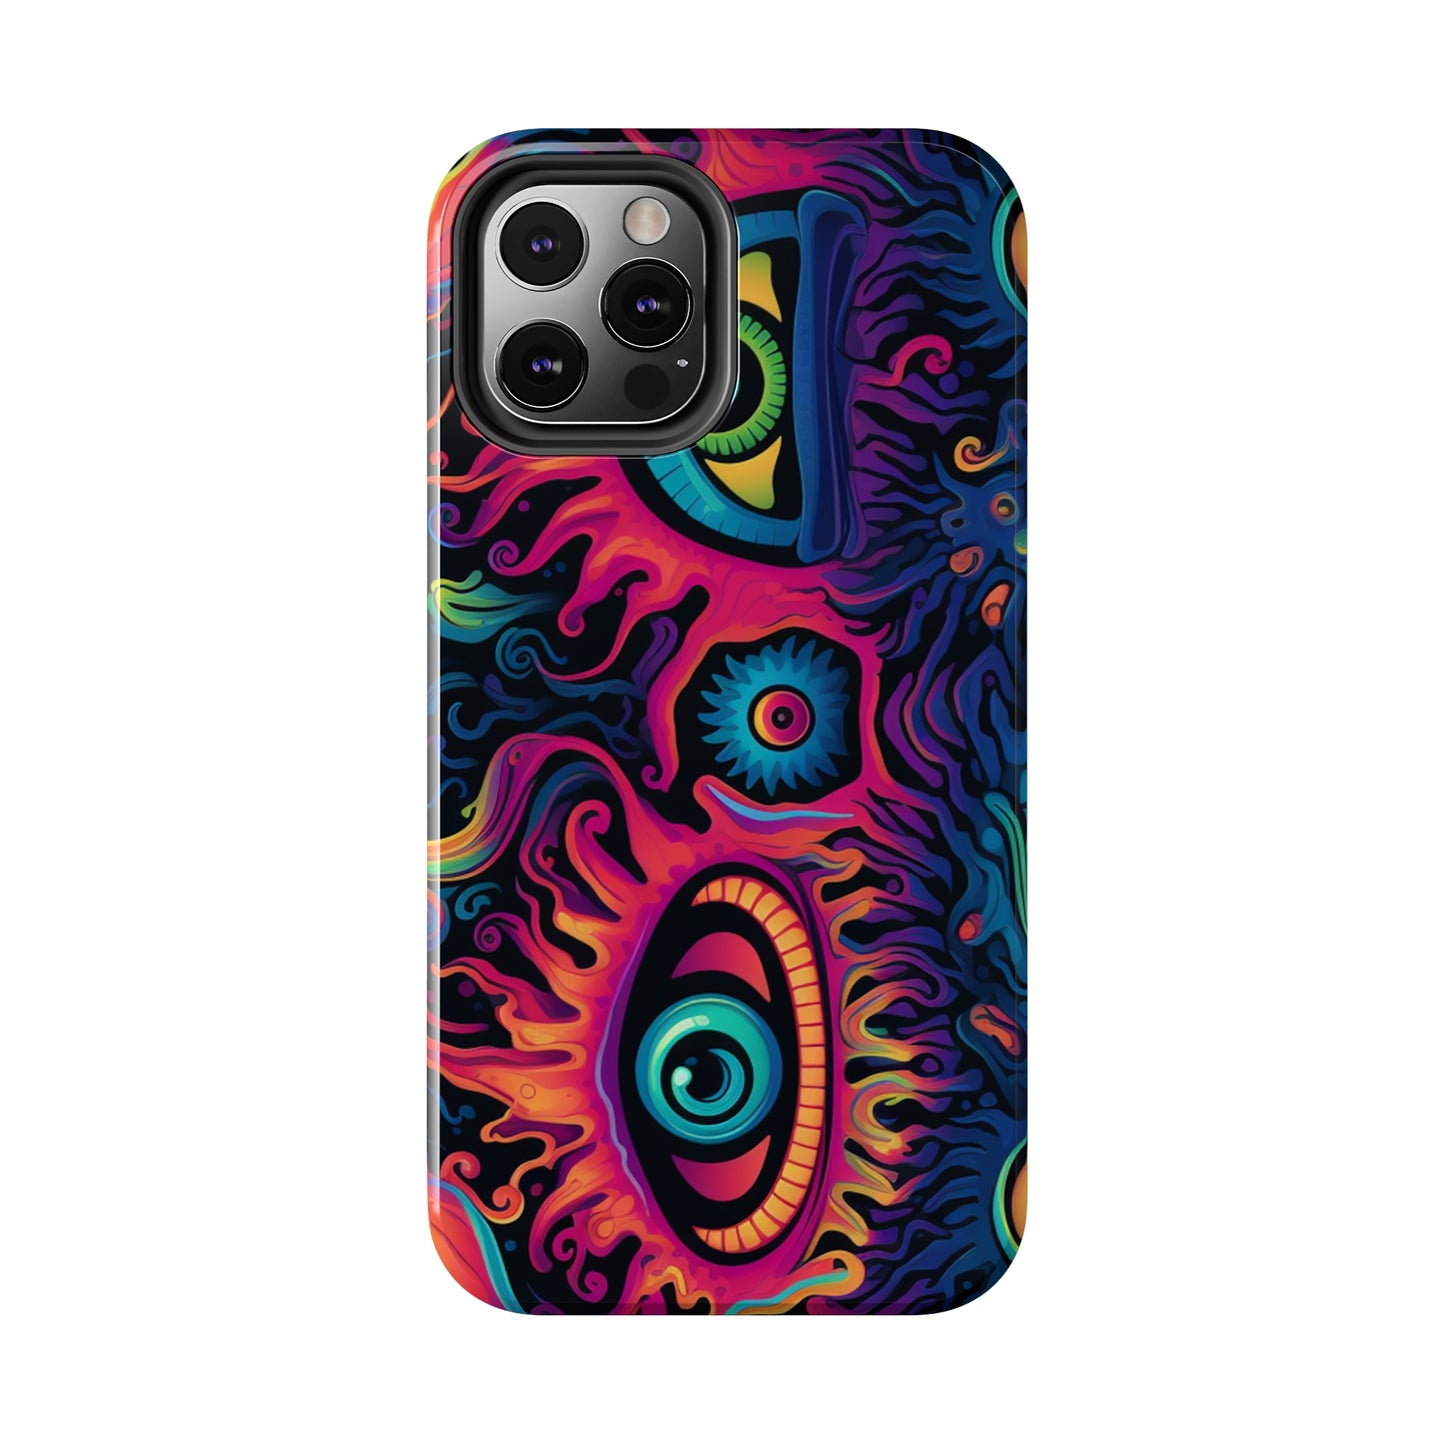 Magic Mushroom iPhone case